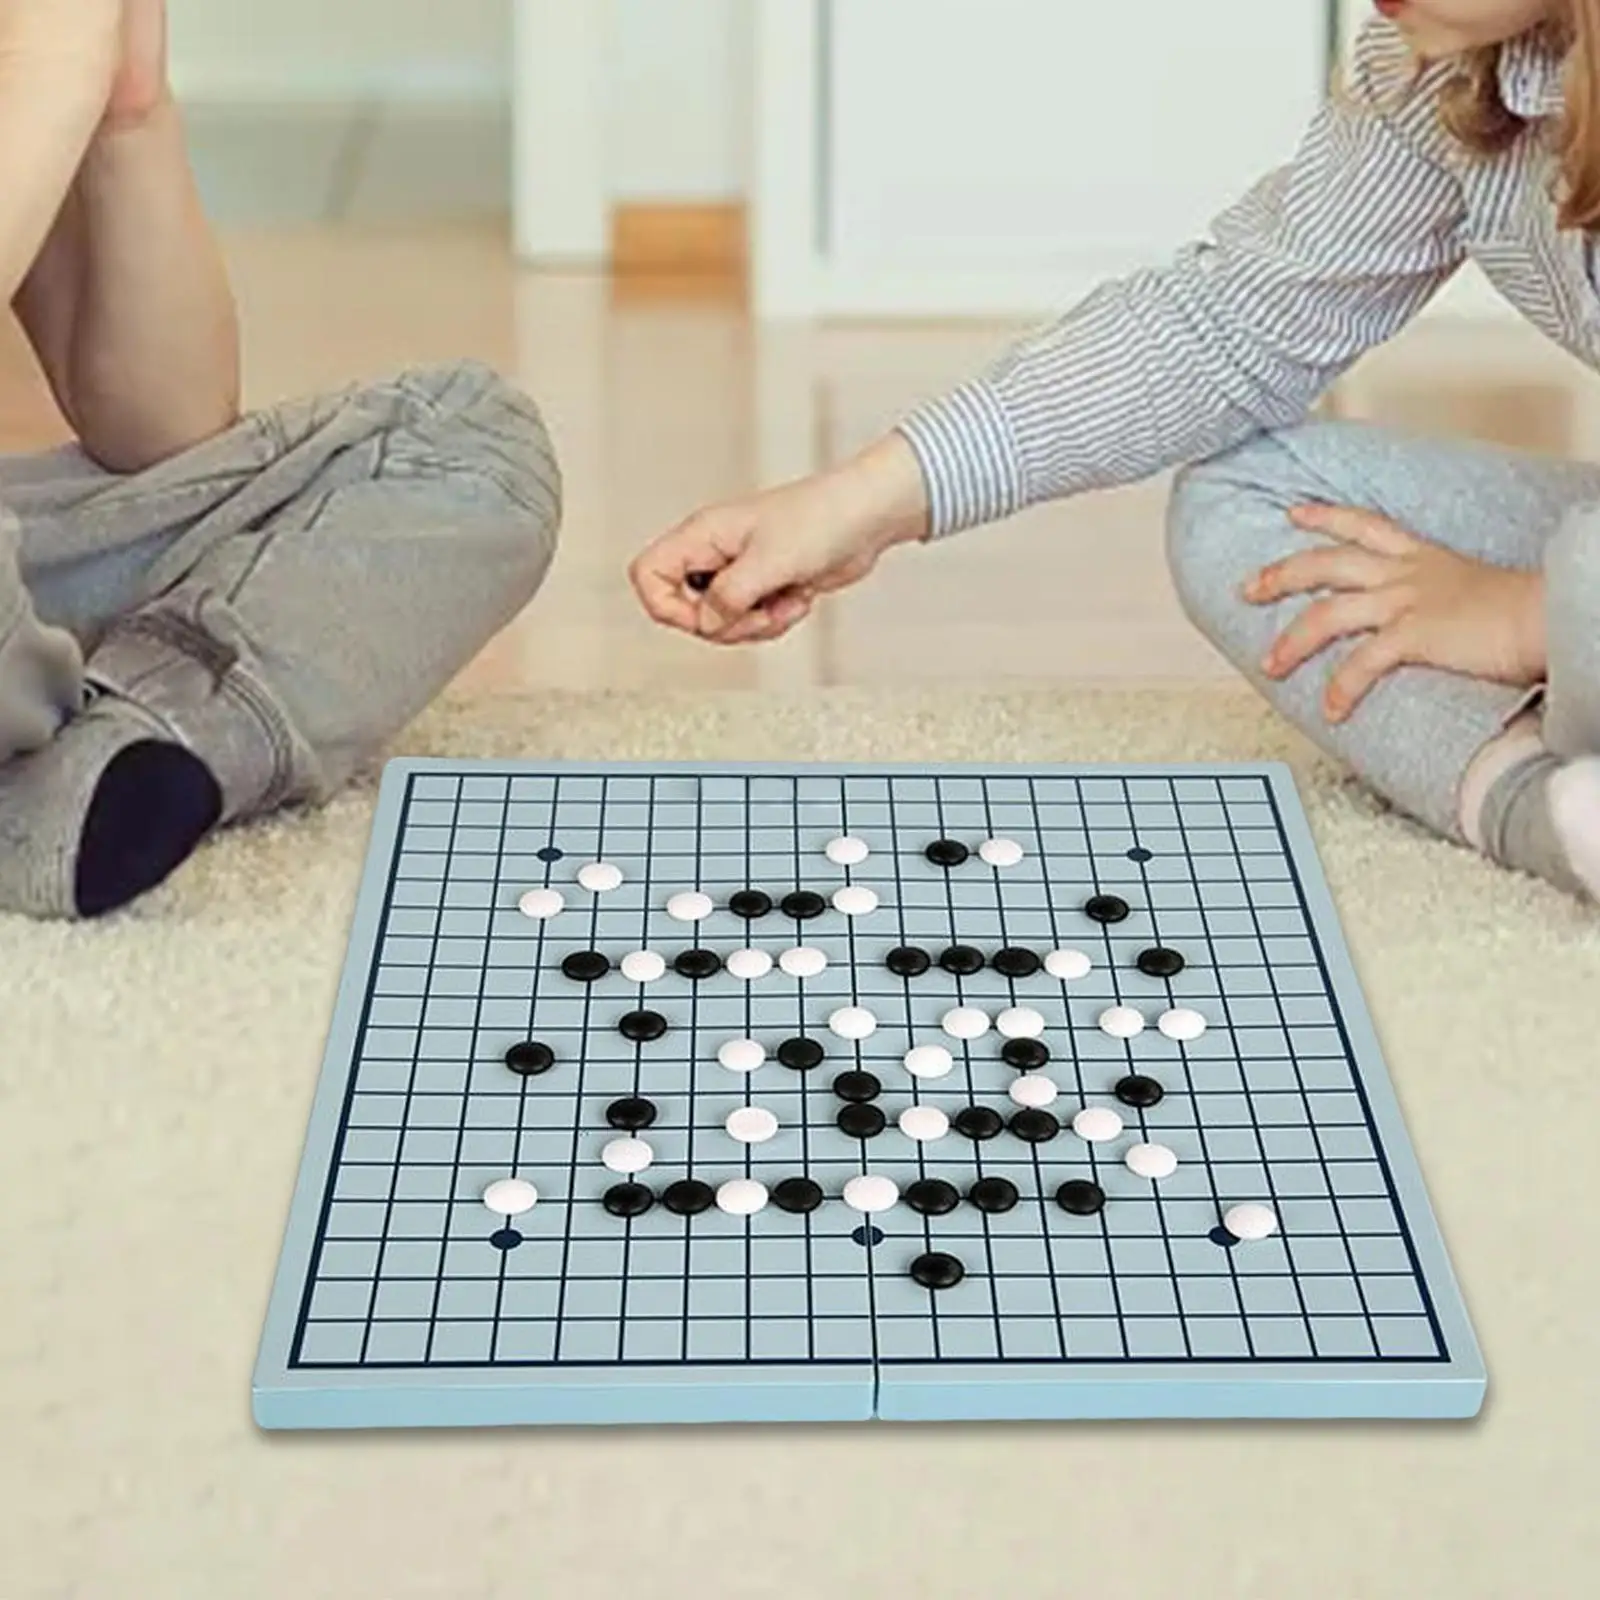 

Go Set складная доска 18x18 классическая китайская стратегическая настольная игра для семьи